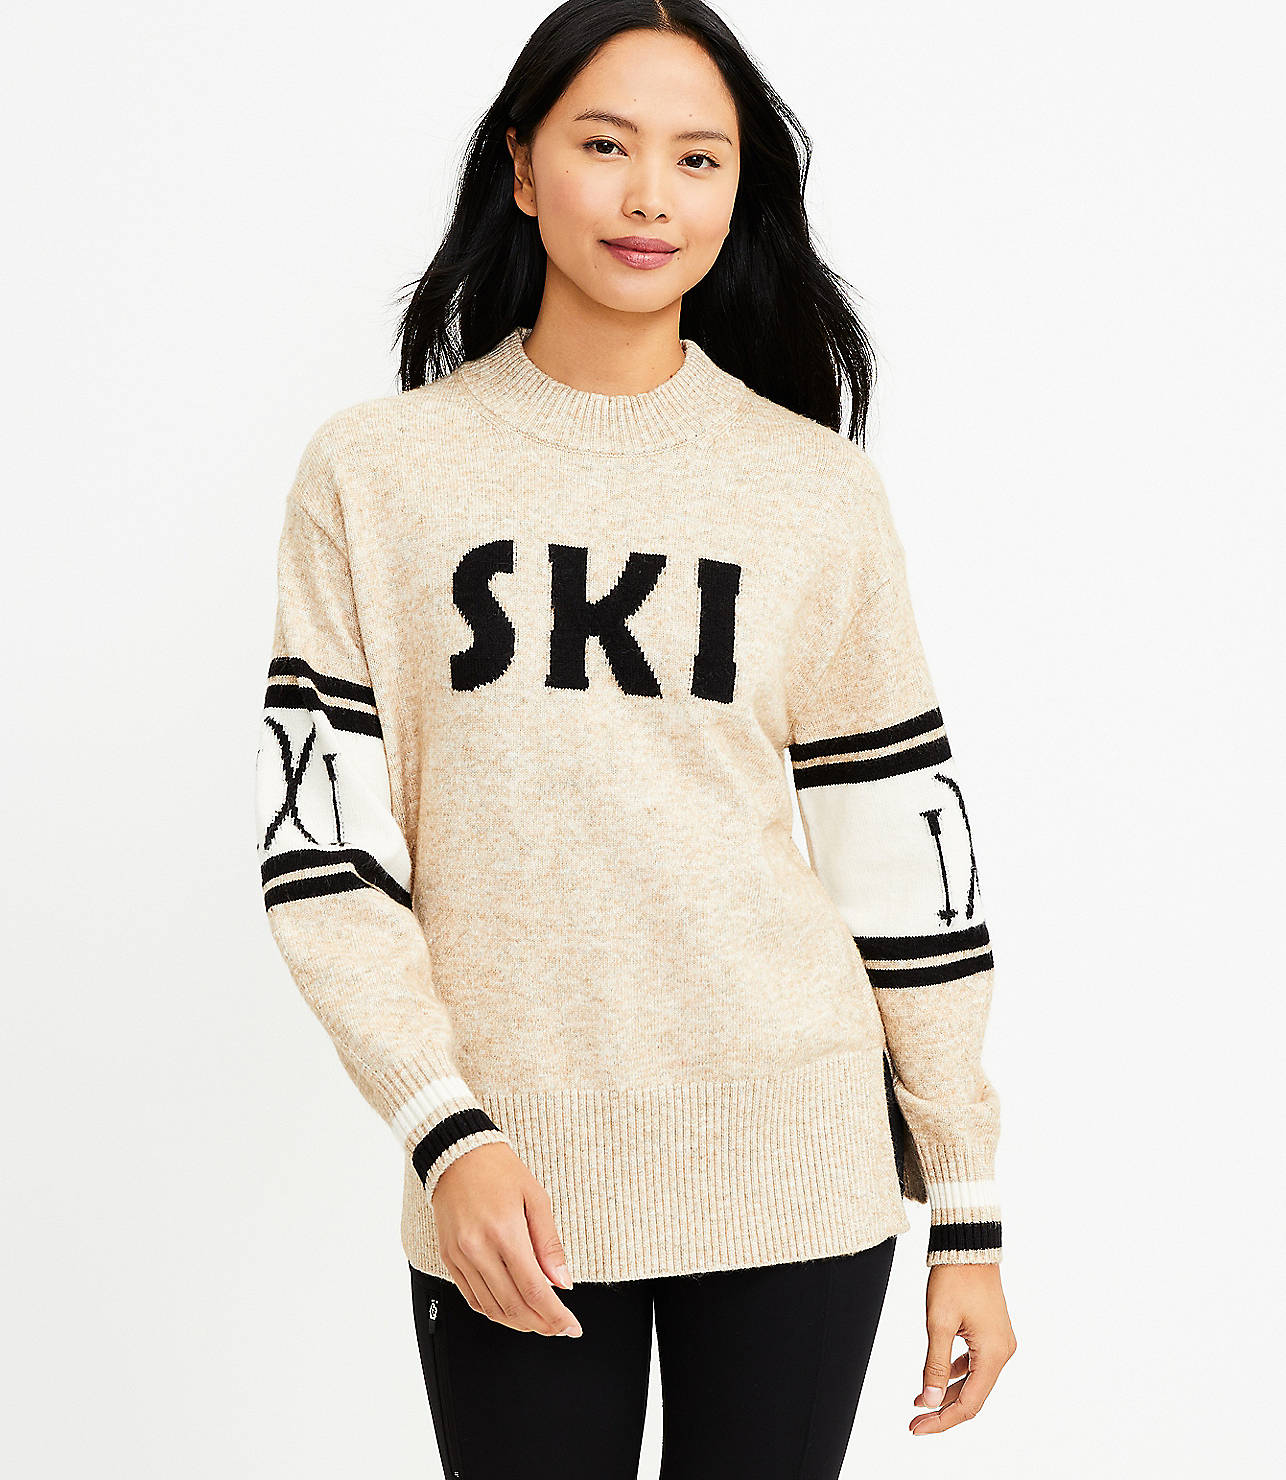 Lou & Grey Ski Tunic Sweater